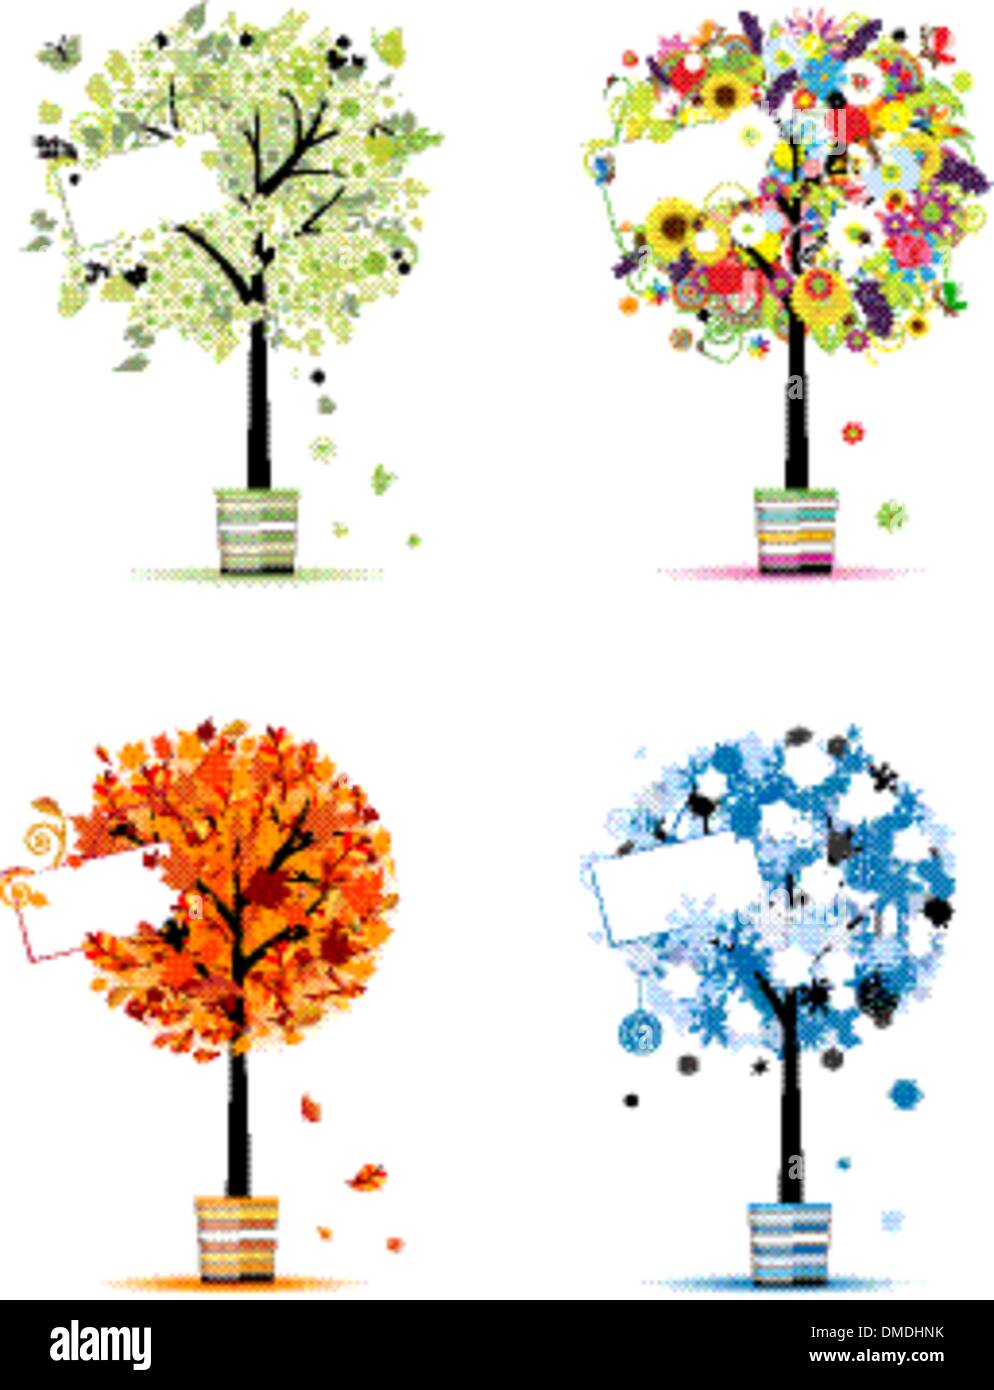 Quatre saisons - printemps, été, automne, hiver. Les arbres d'art en pots pour votre conception Illustration de Vecteur